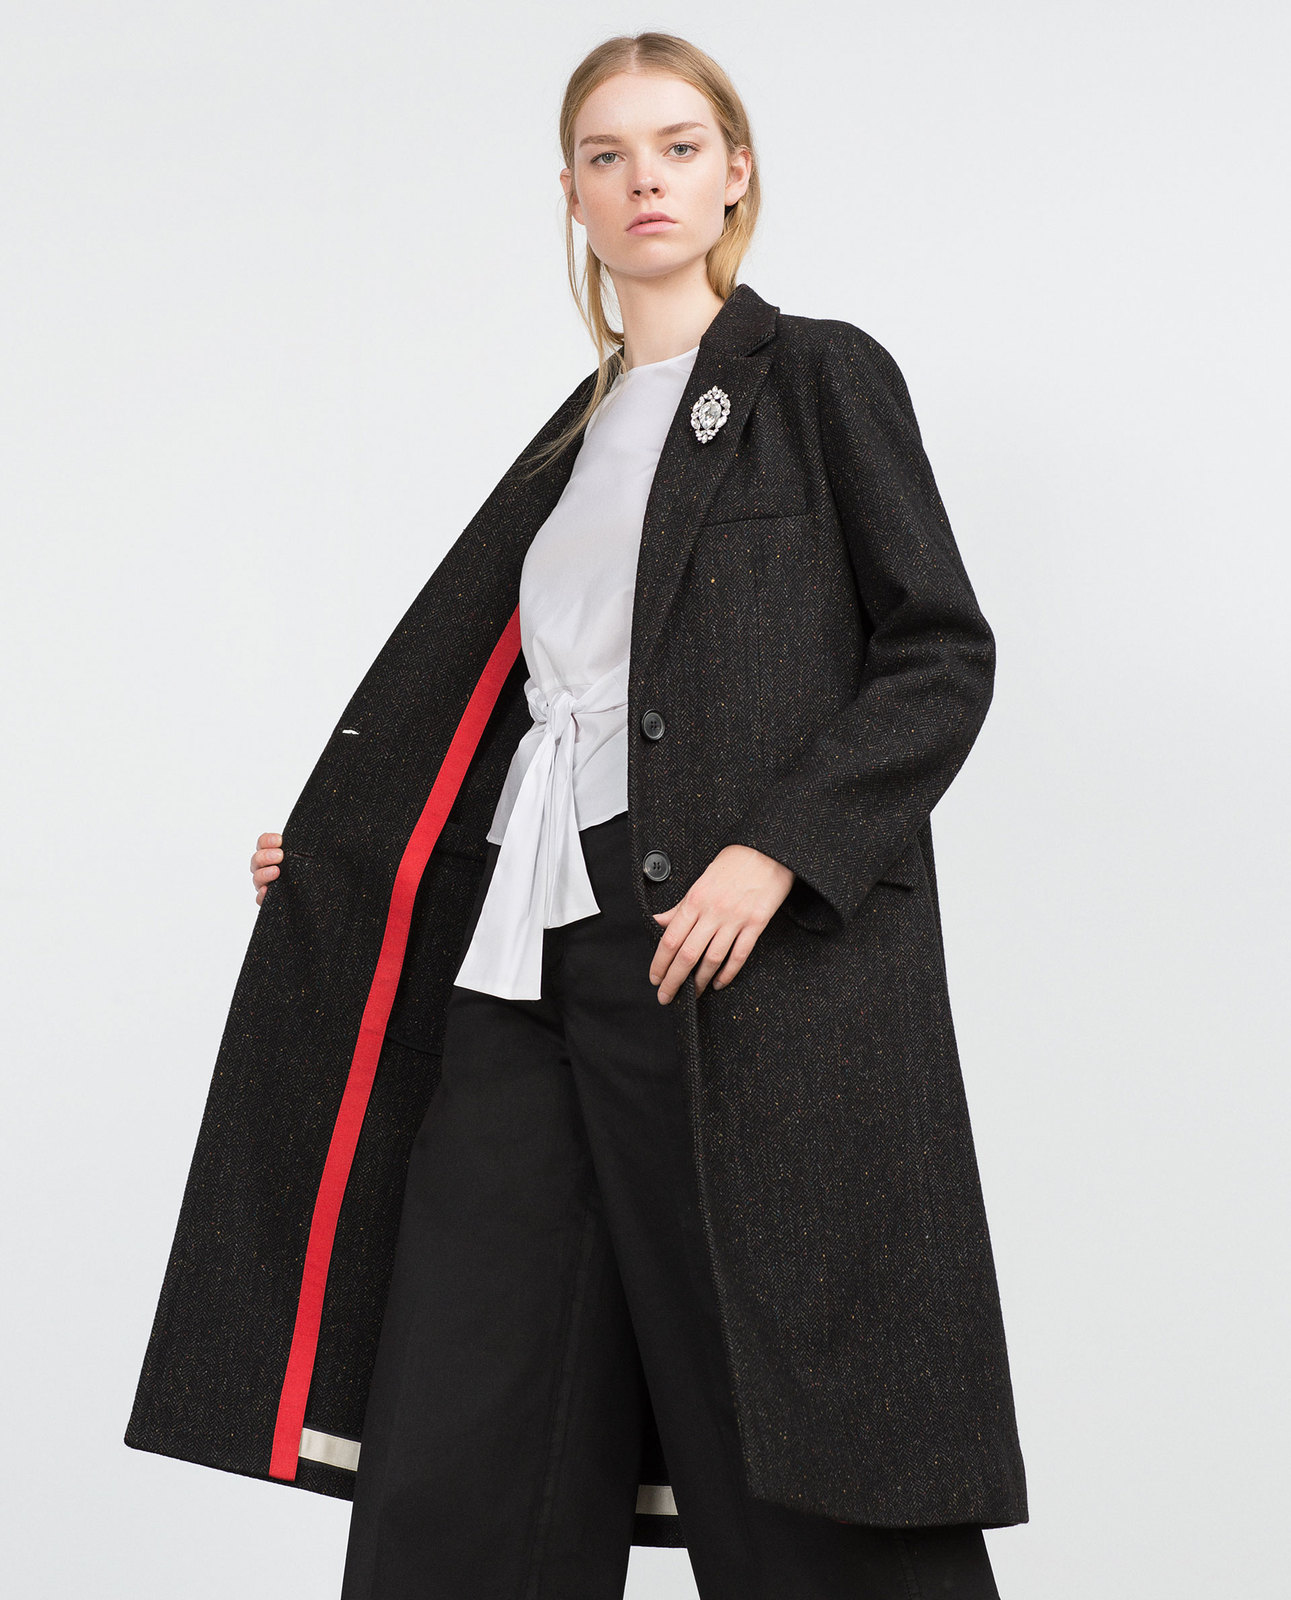 Zara női egyenes szabású kabát 2015.10.15 fotója